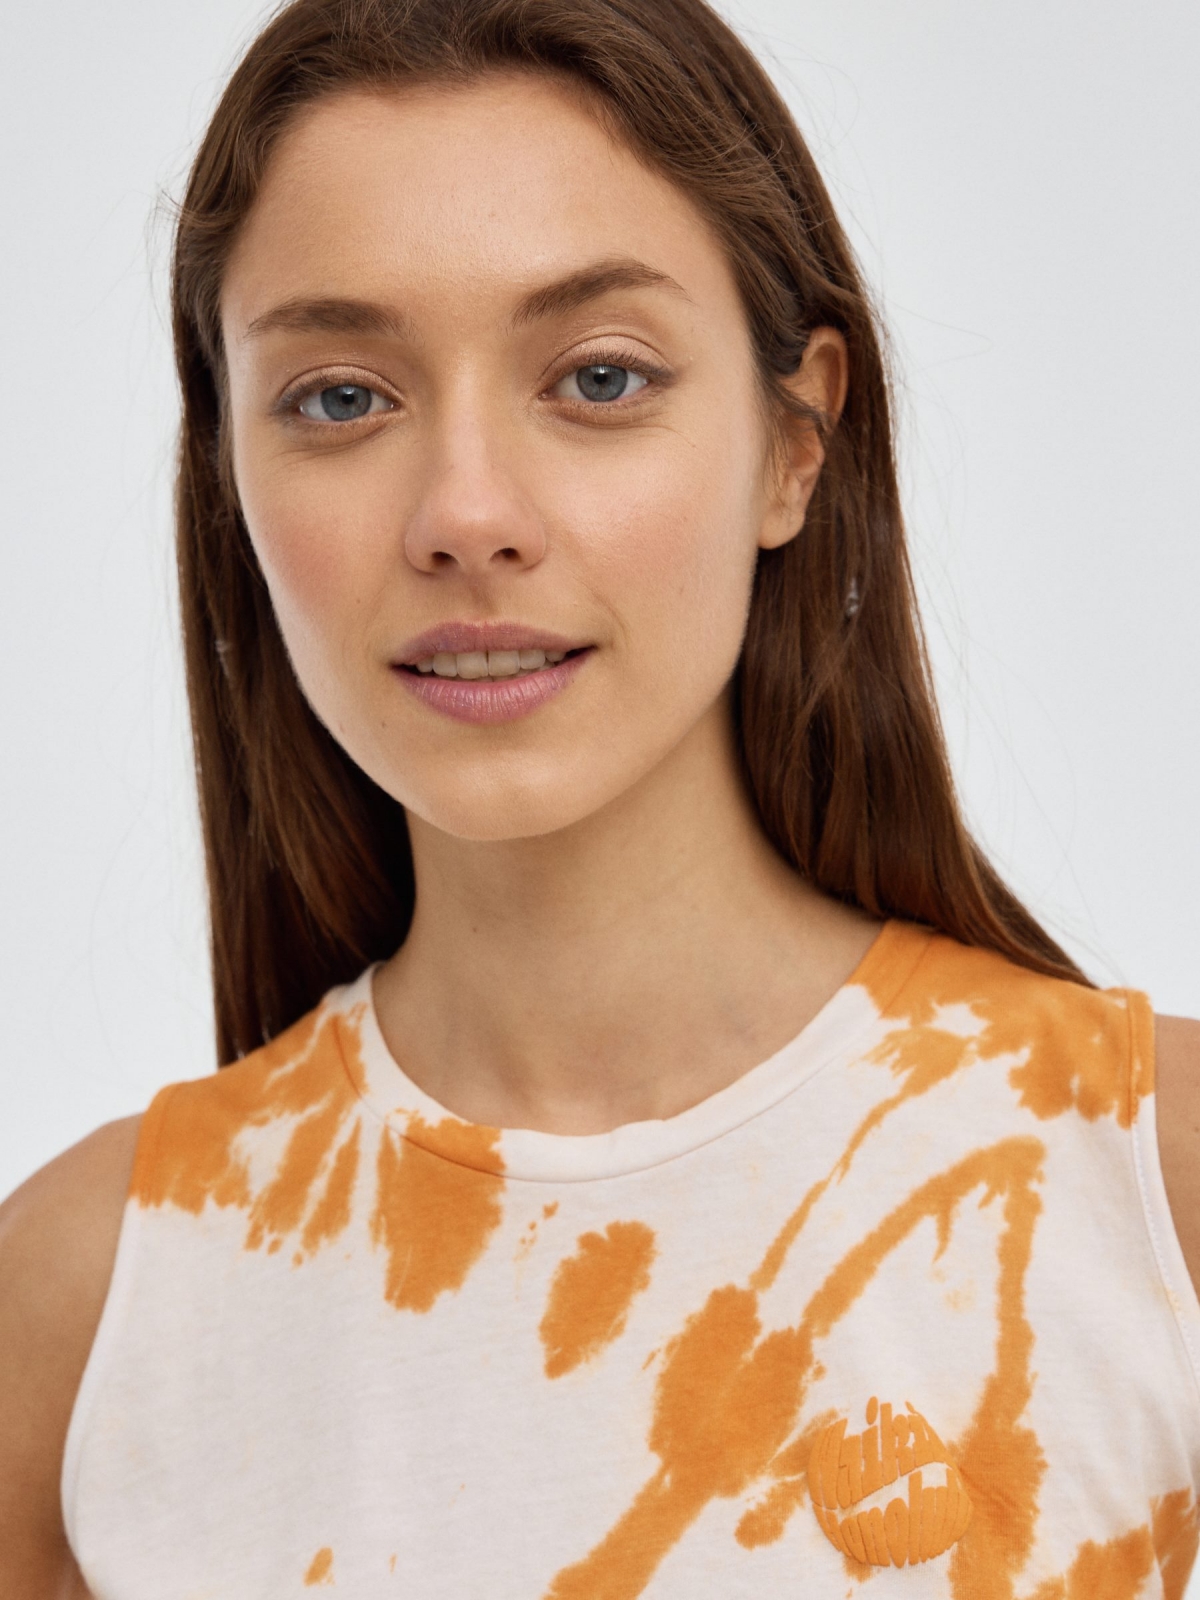 Tie&dye sleeveless T-shirt caldera orange detail view